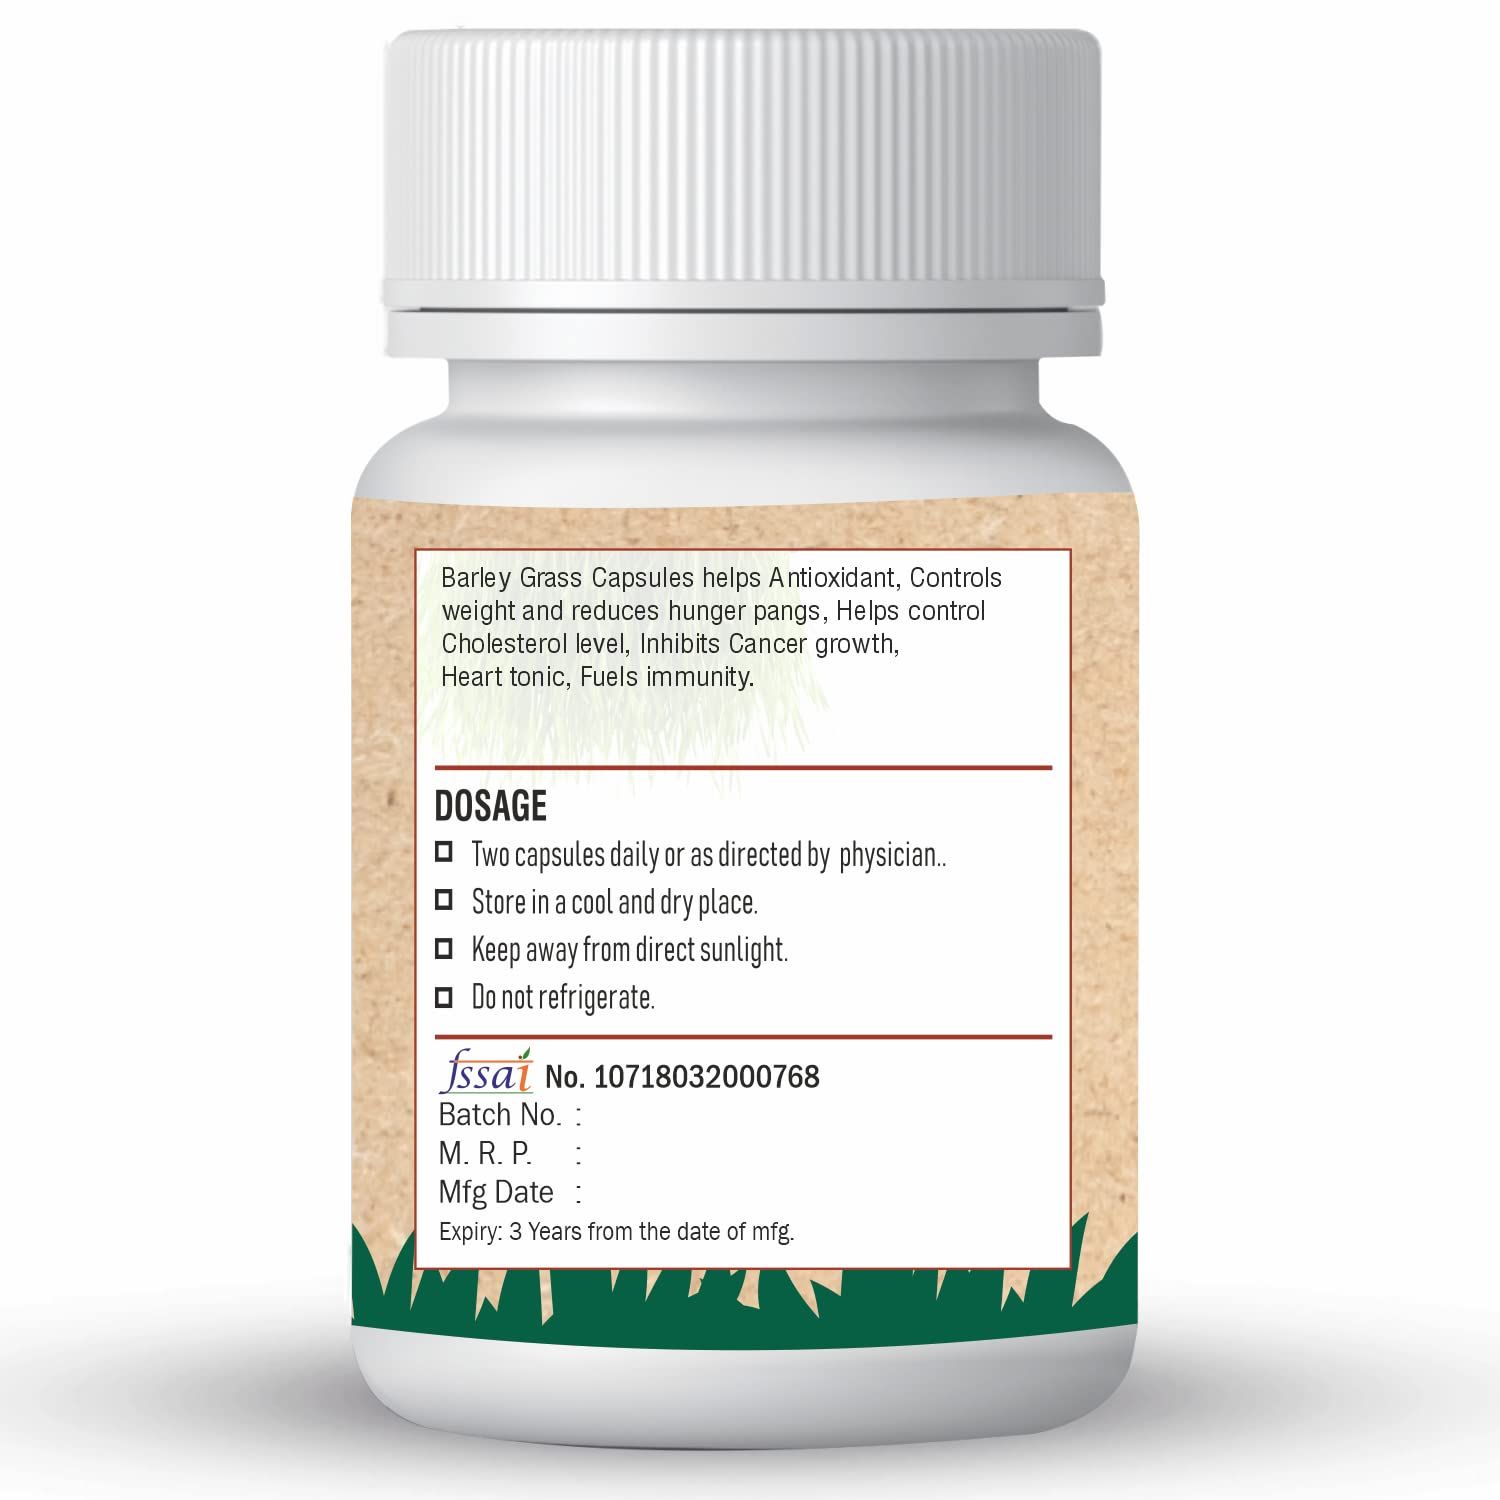 Xovak Pharma Organic Barley Grass Capsules Image